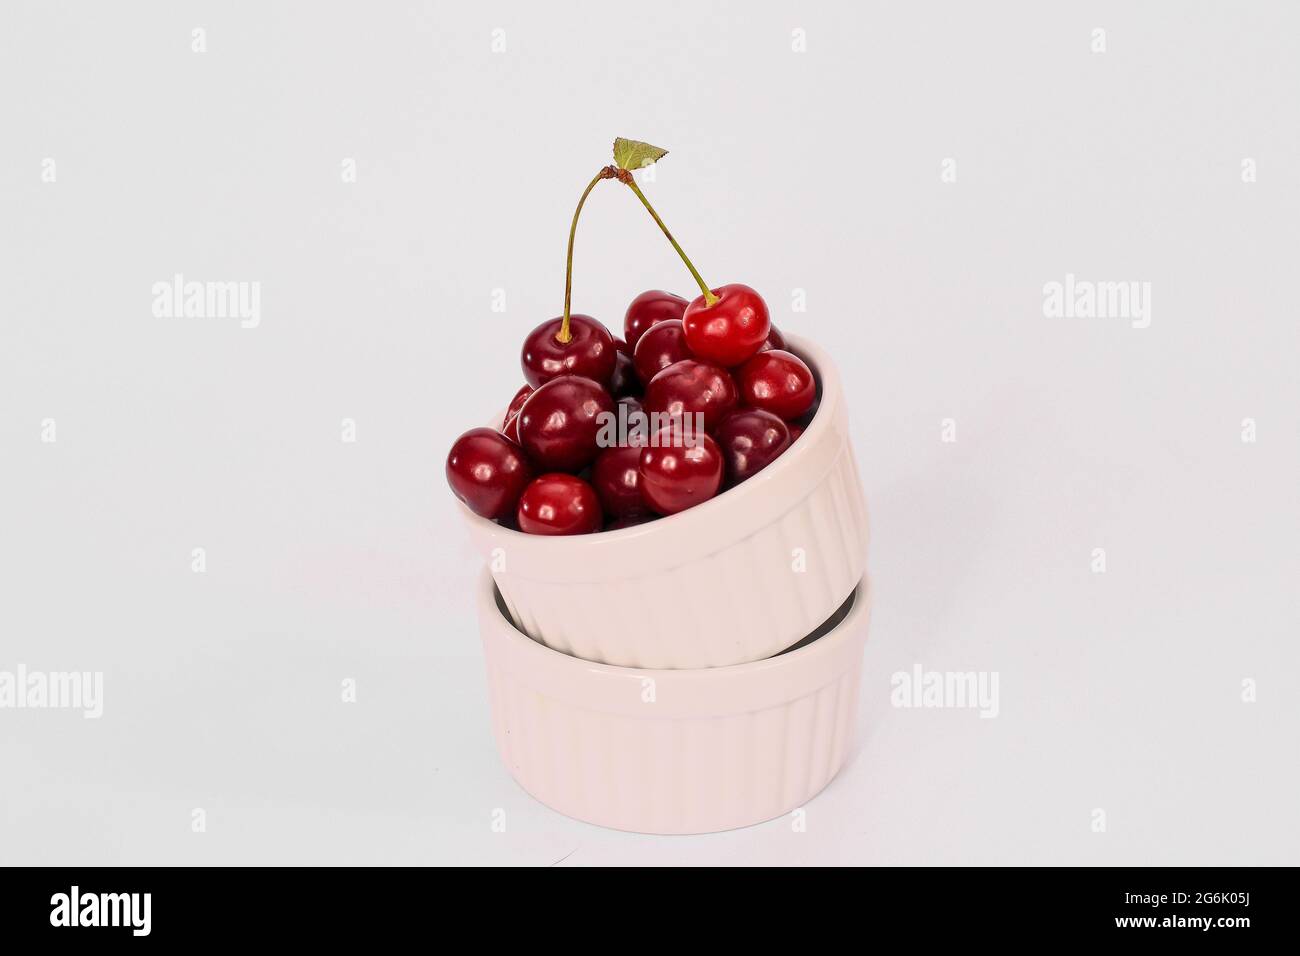 frutta fresca di ciliegia rossa in un piatto su fondo bianco. mock up Foto Stock